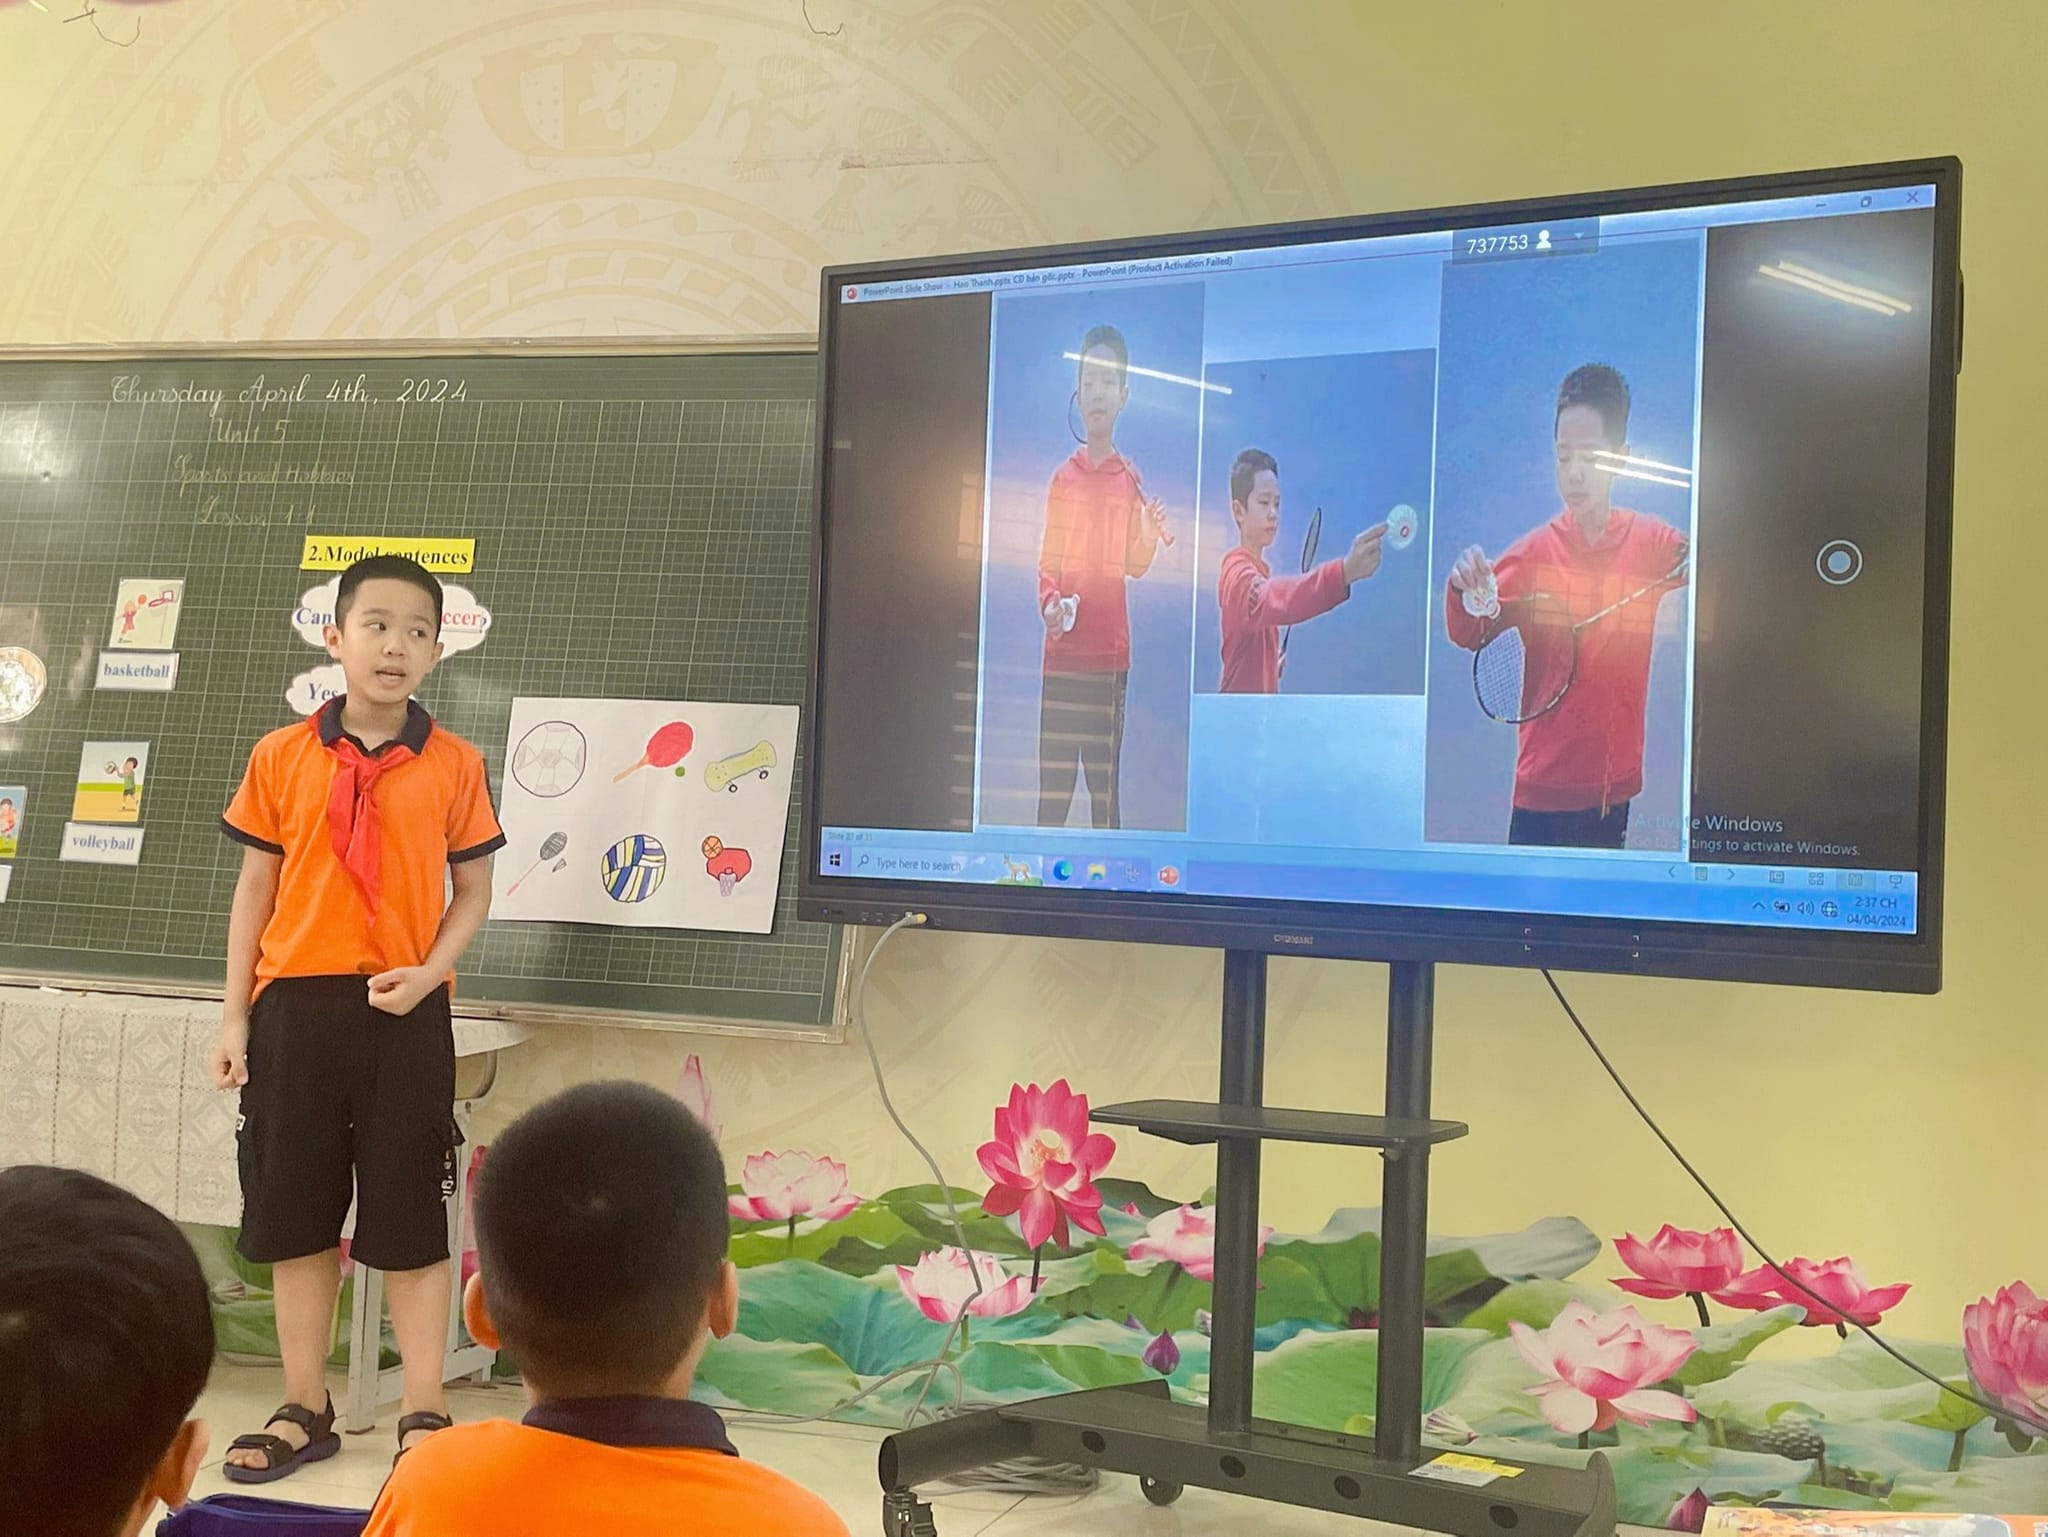 Trường Tiểu học Vân Canh thực hiện thành công chuyên đề Tiếng Anh cấp huyện.